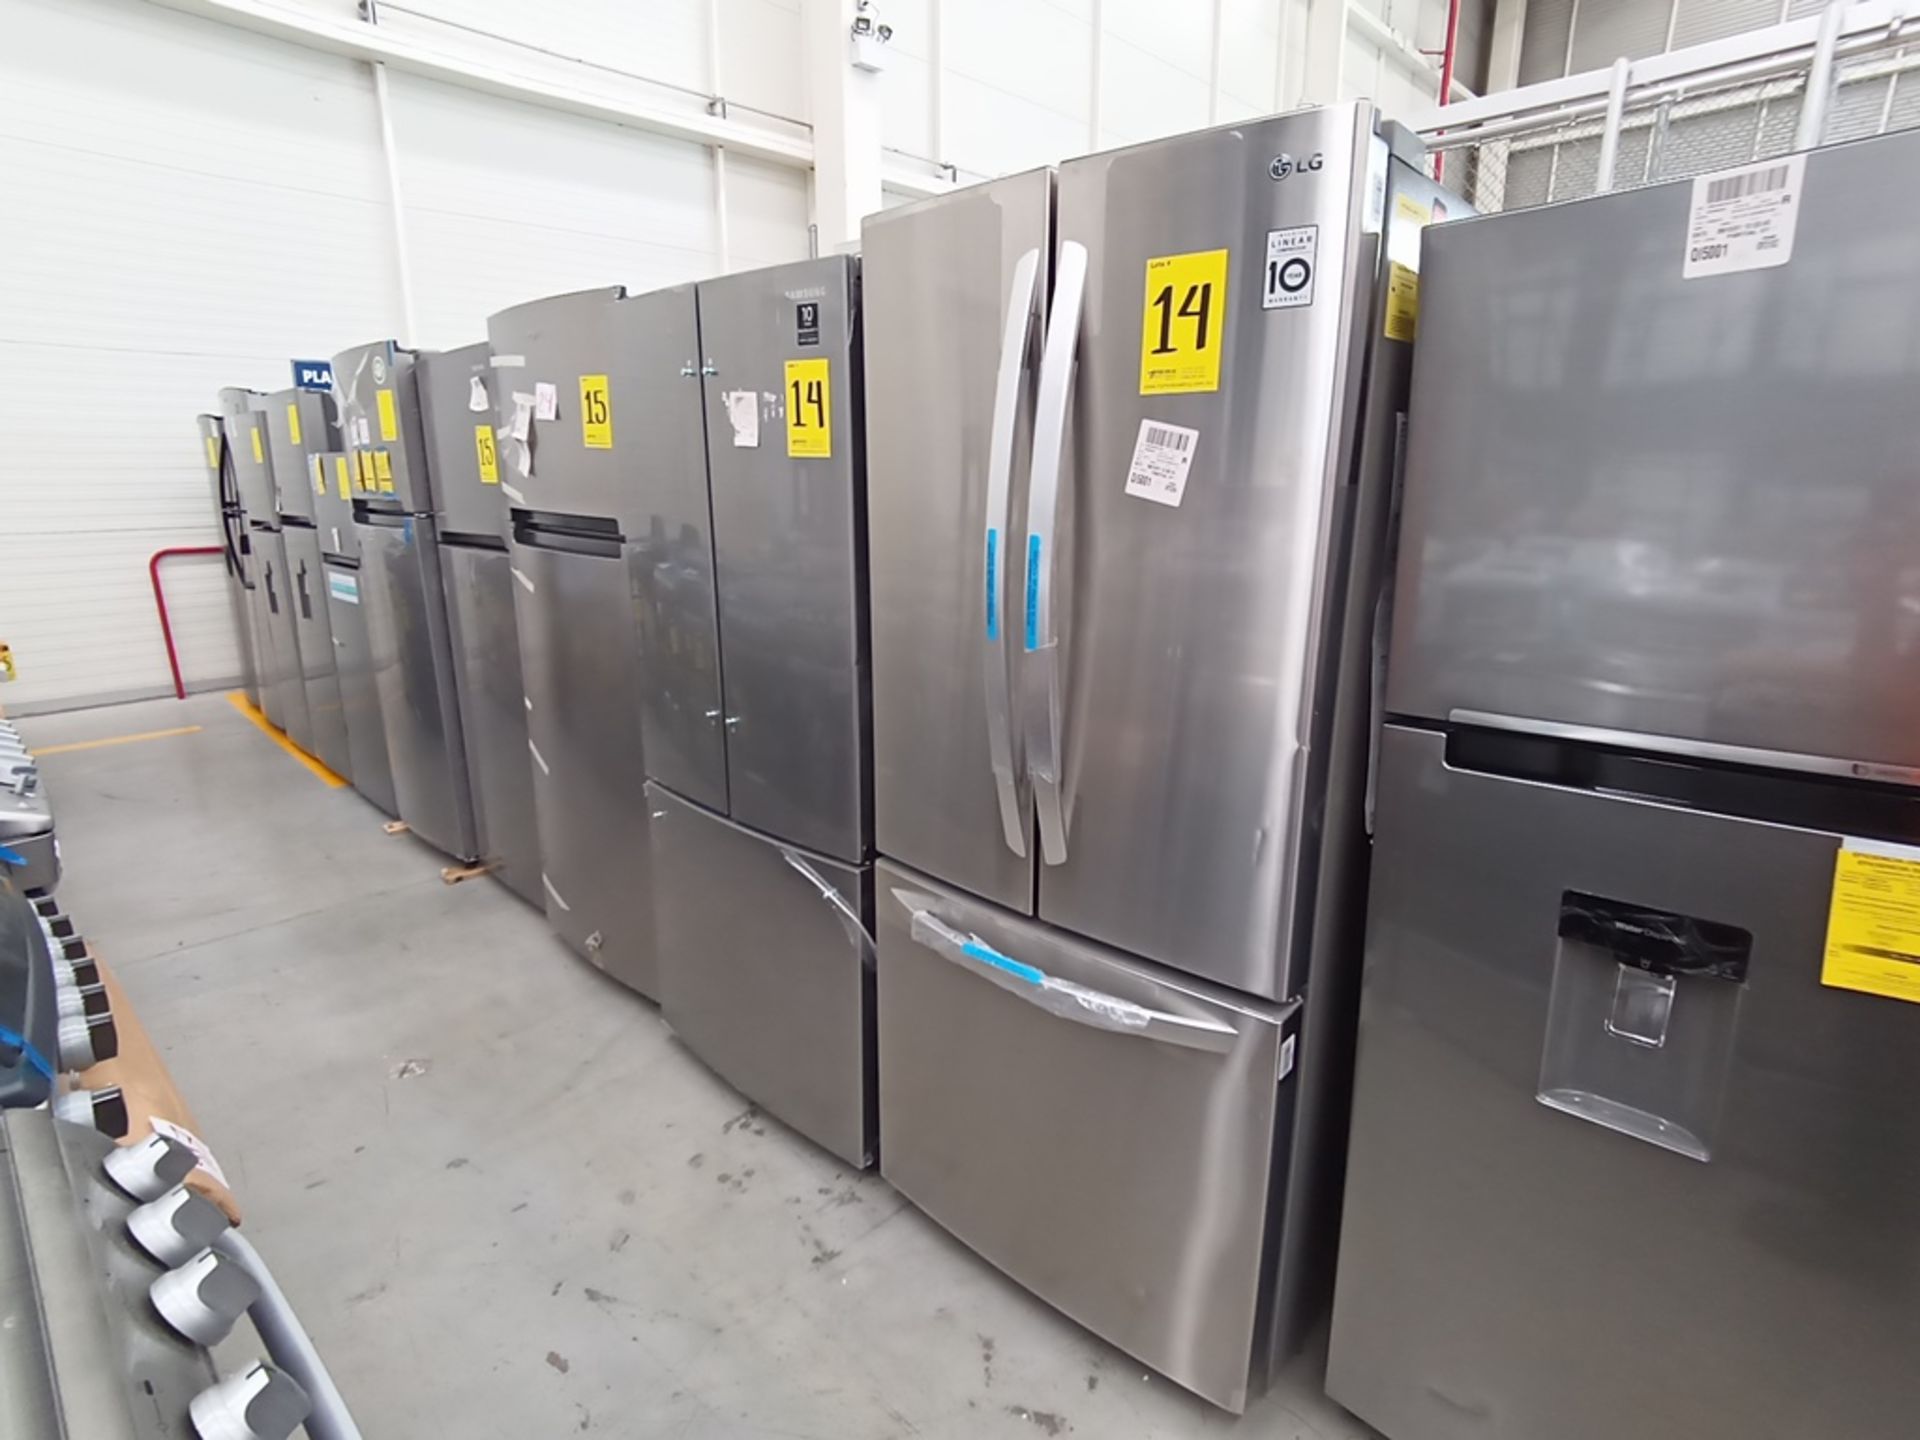 Lote de 2 refrigeradores contiene: 1 Refrigerador Marca LG, Modelo GF22BGSK, Serie 107MRMD4S595, Co - Image 2 of 16